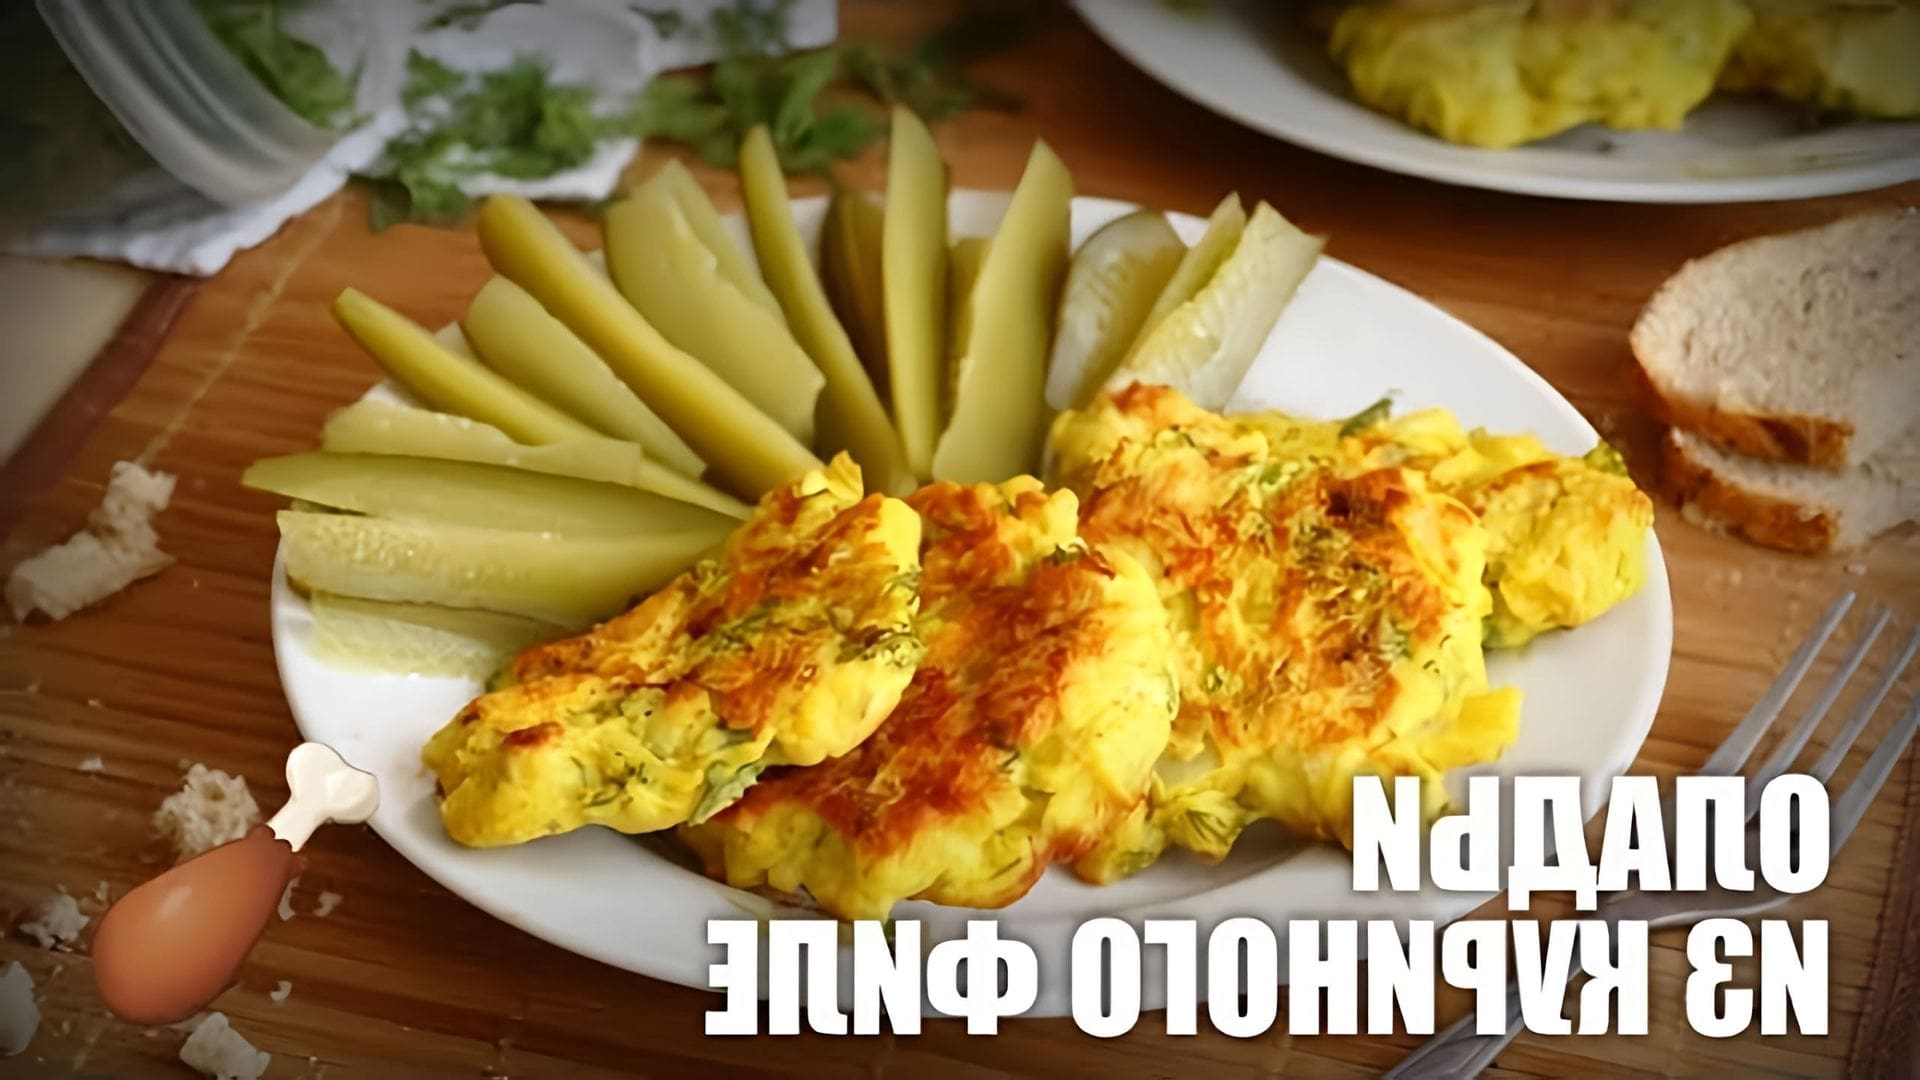 В этом видео демонстрируется рецепт приготовления оладий из куриного филе